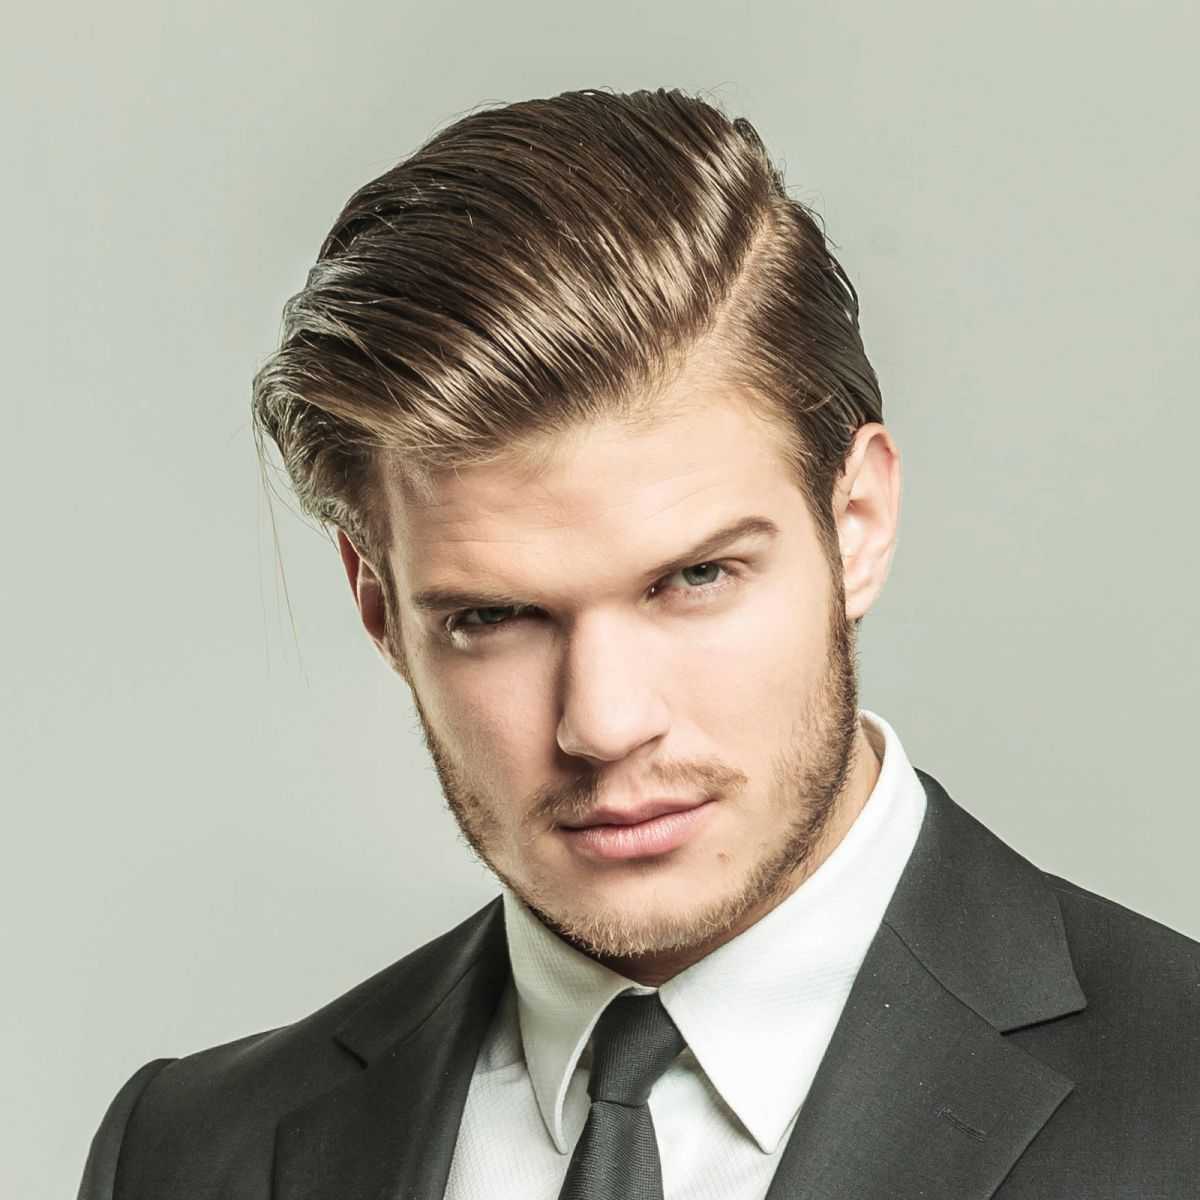 Как укладывать волосы гелем для мужчин со средней длиной волос